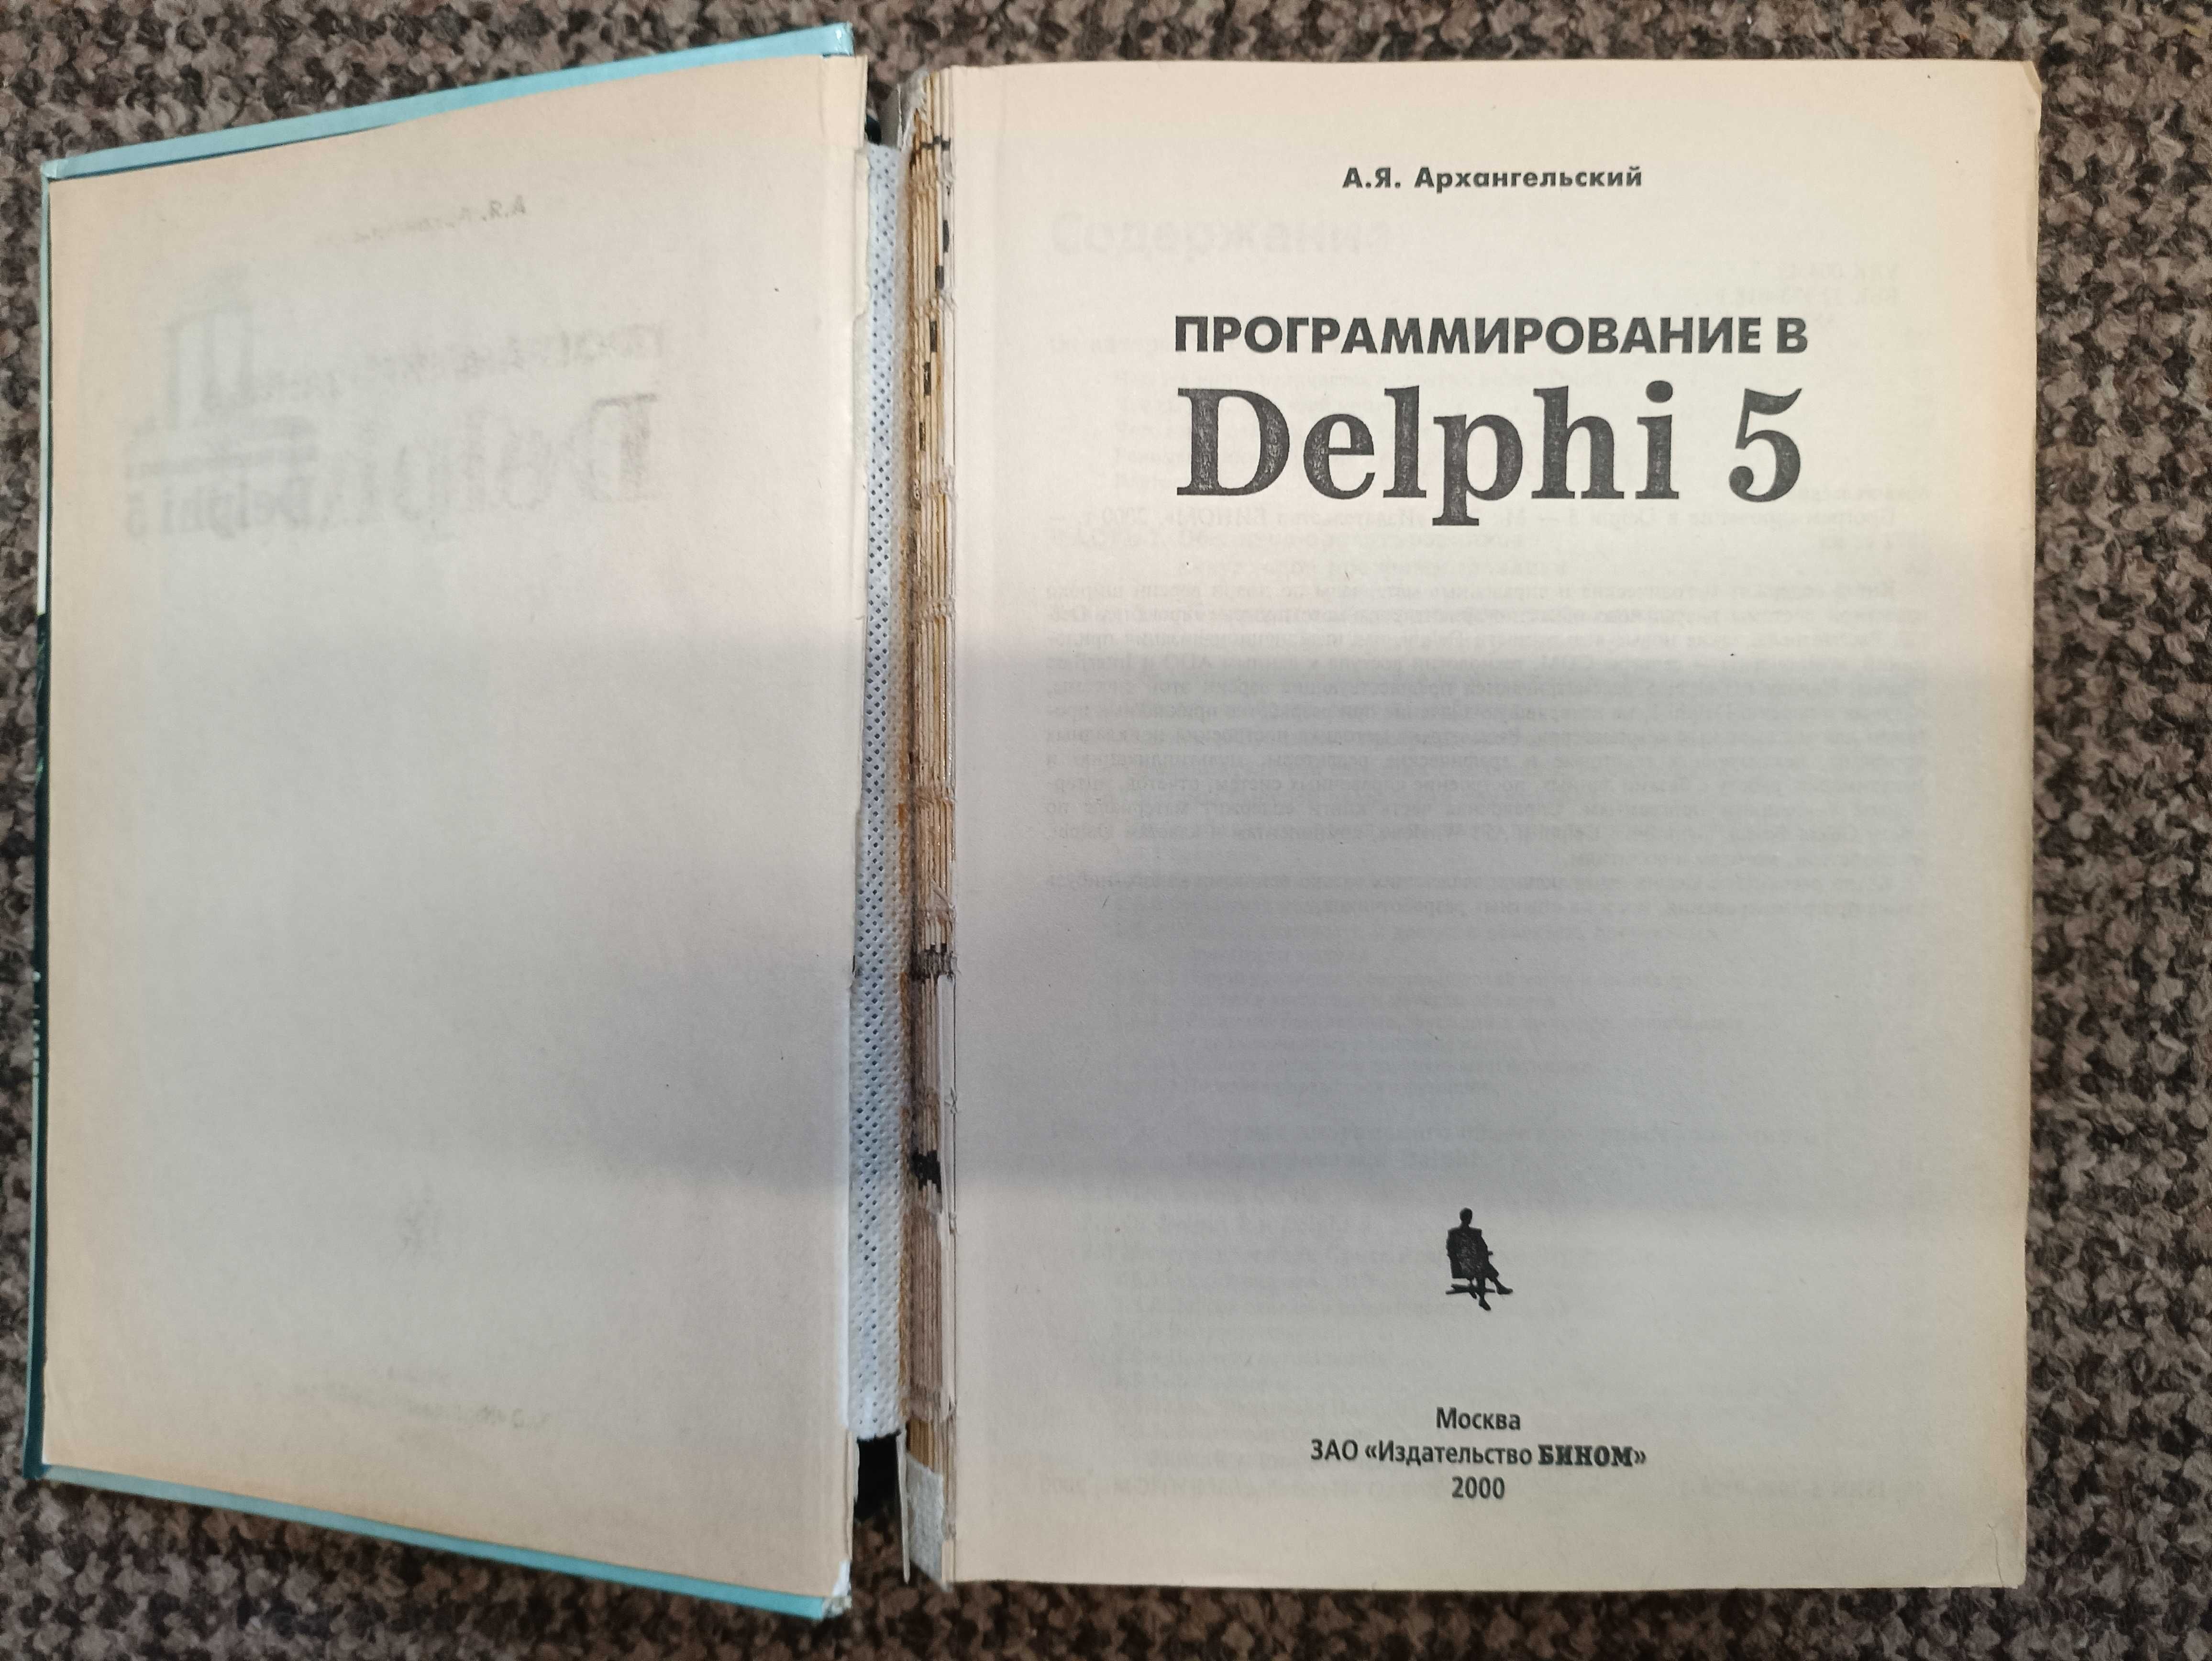 Программирование в Delphi 5, Занимательный компьютер